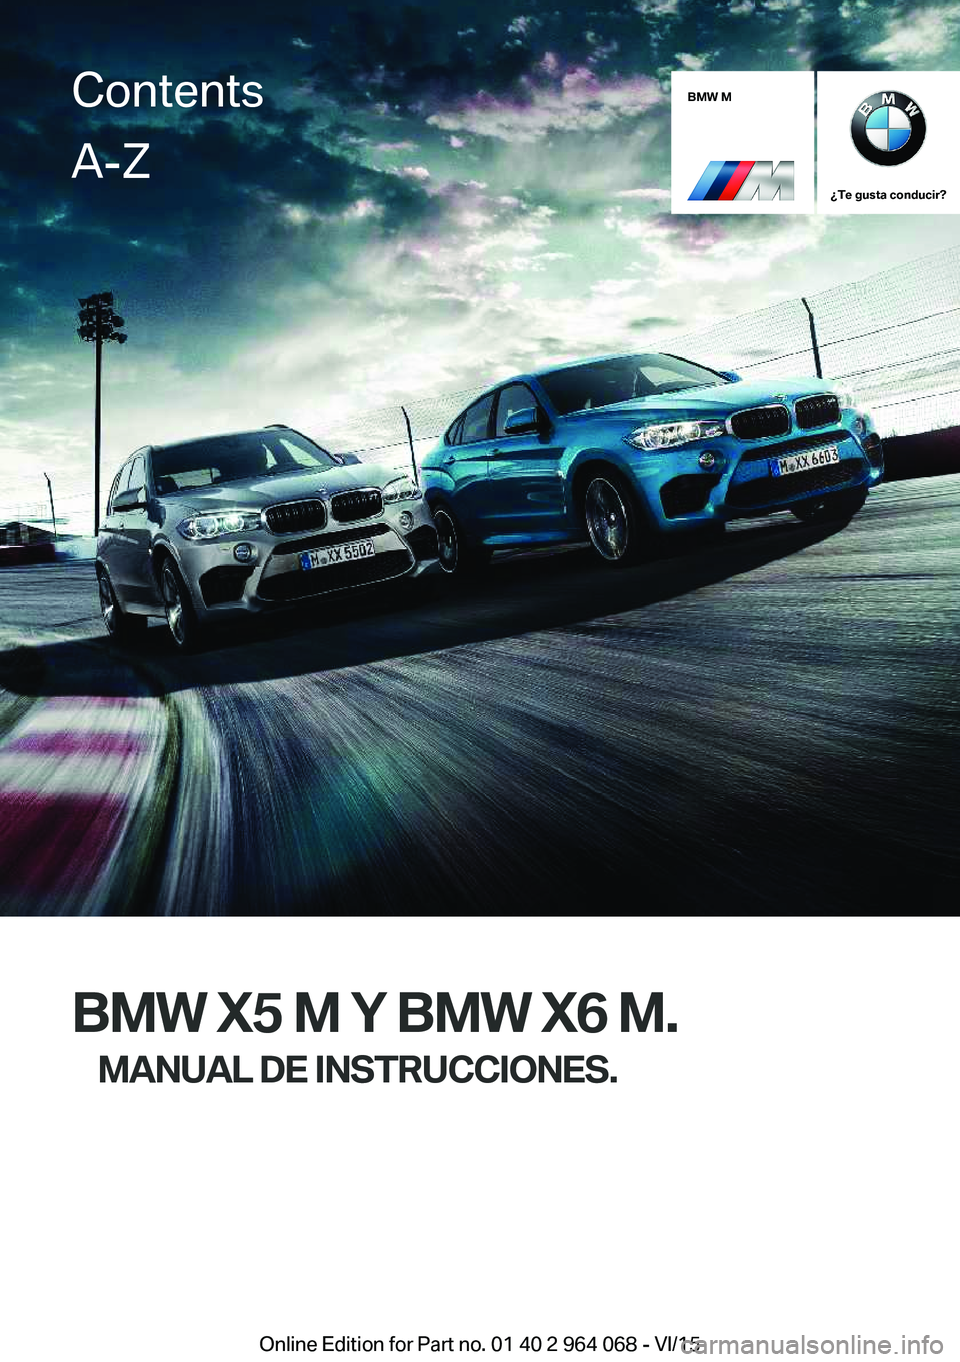 BMW X5 M 2016  Manuales de Empleo (in Spanish) BMW M
¿Te gusta conducir?
BMW X5 M Y BMW X6 M.MANUAL DE INSTRUCCIONES.
ContentsA-Z
Online Edition for Part no. 01 40 2 964 068 - VI/15   